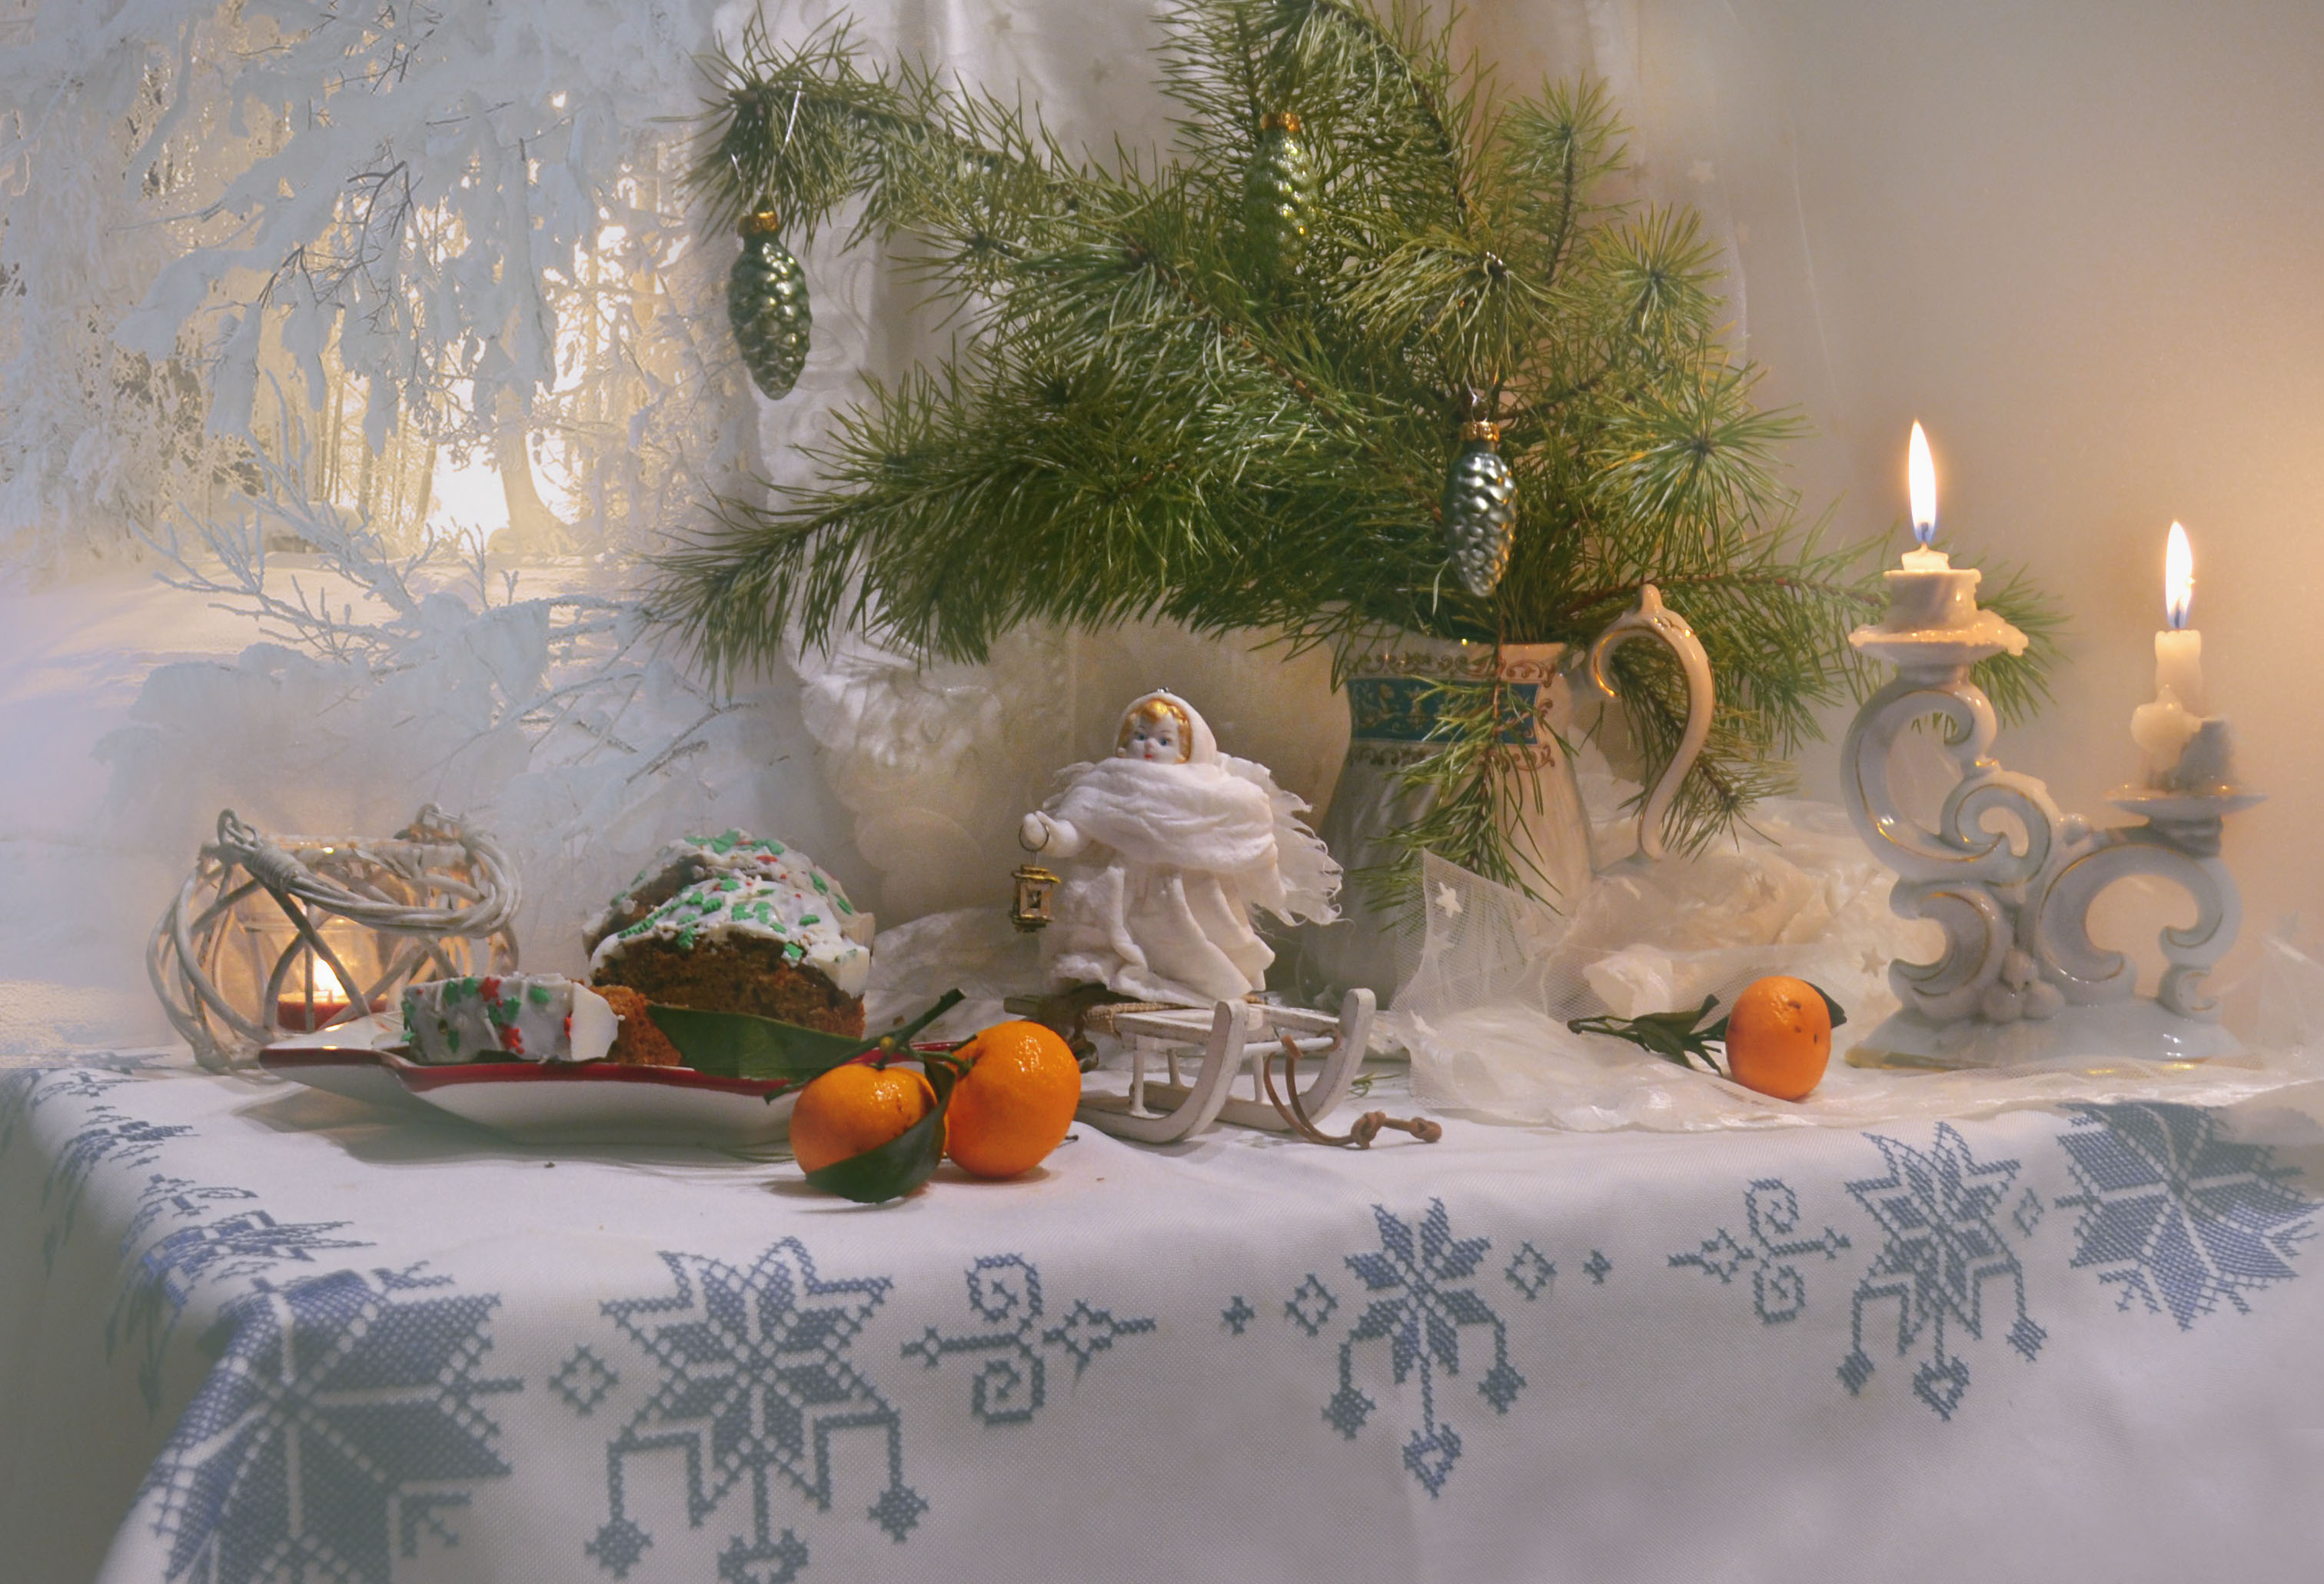 still life, натюрморт, фото натюрморт, зима, январь,  праздник, свечи, подсвечники, настроение, рождество, снежный ангел, ватные игрушки, рождественский кекс, мандарины, Колова Валентина